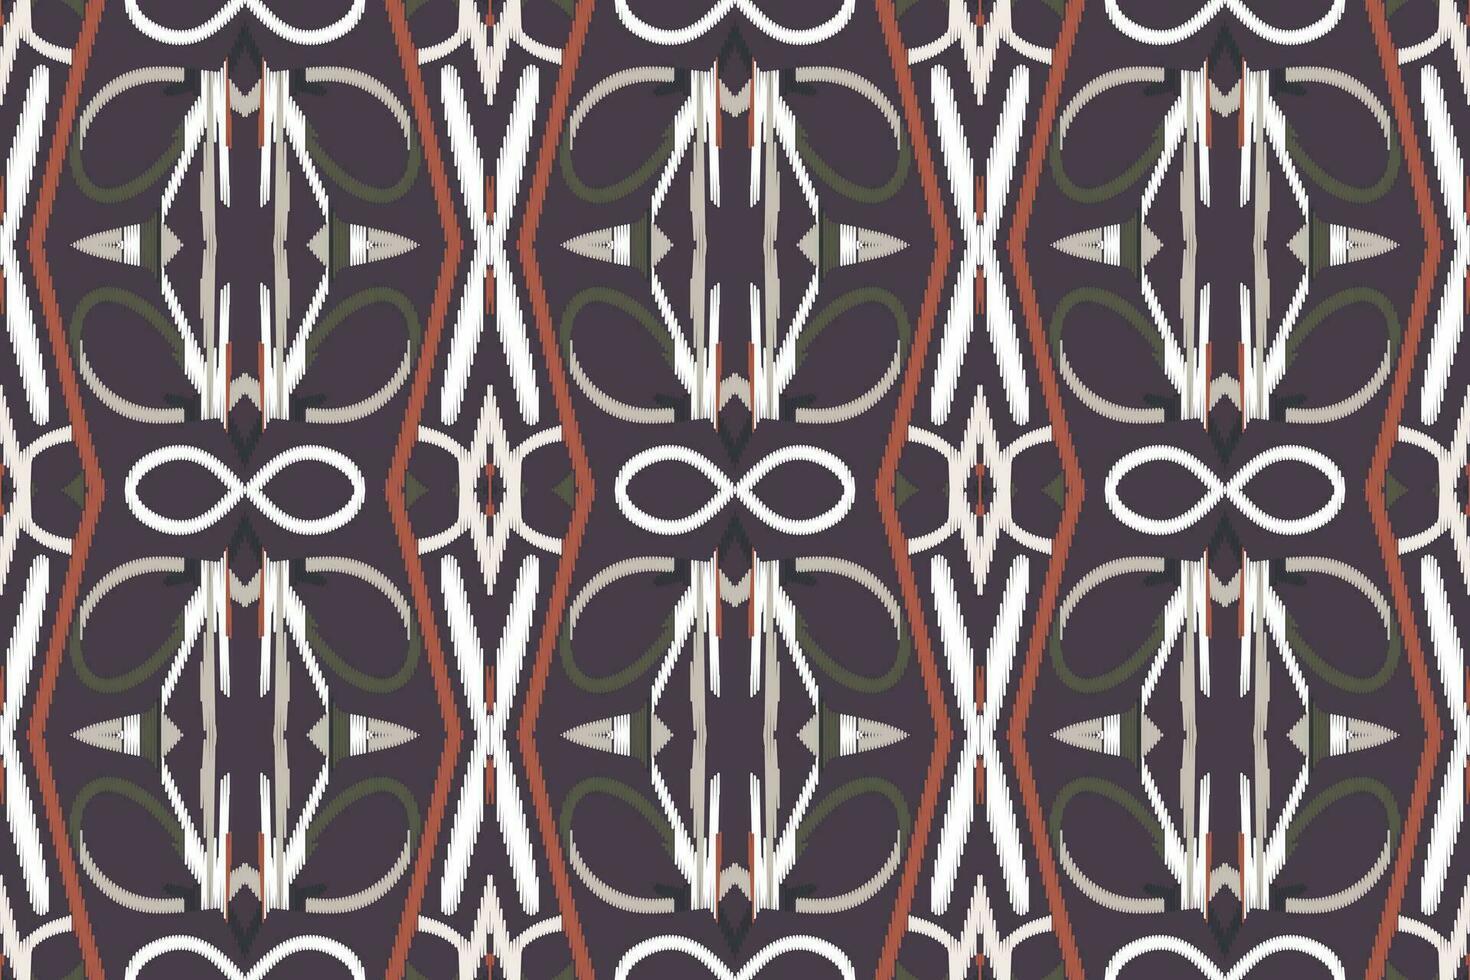 ikat damasco cachemir bordado antecedentes. ikat patrones geométrico étnico oriental modelo tradicional.azteca estilo resumen vector ilustración.diseño para textura,tela,ropa,envoltura,pareo.